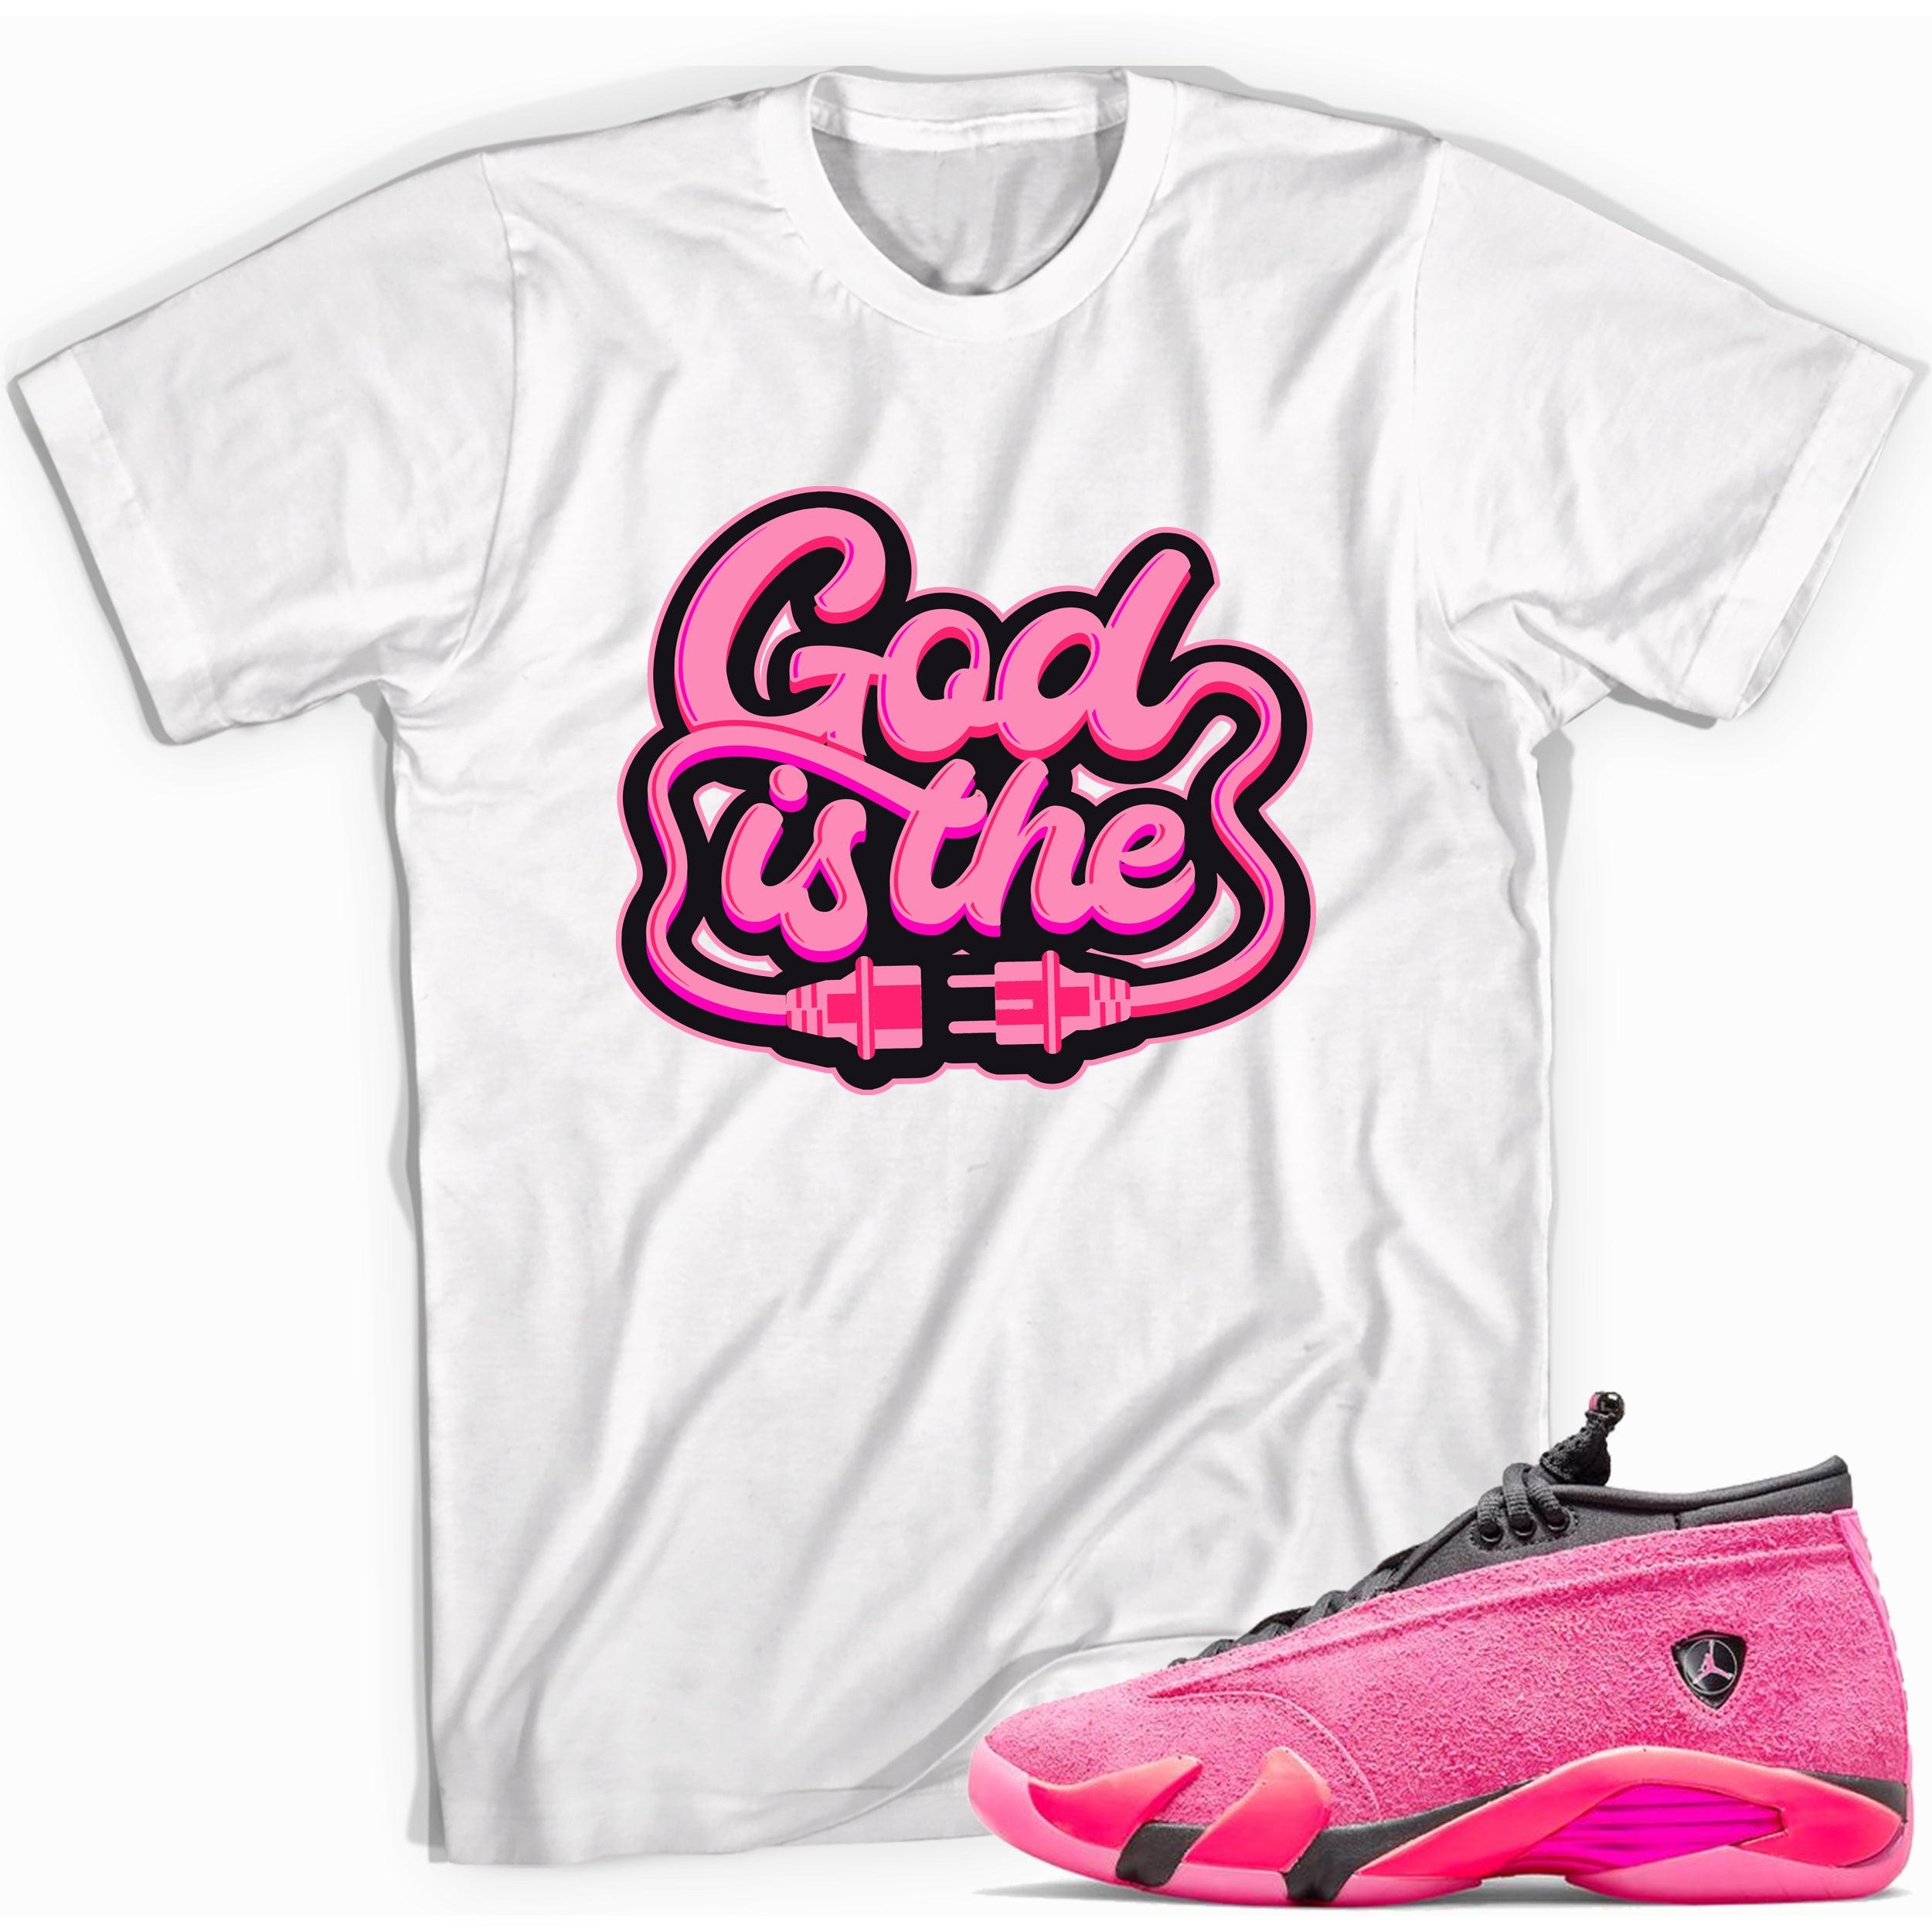 God Is Shirt Jordan 14s Low Shocking Pink photo